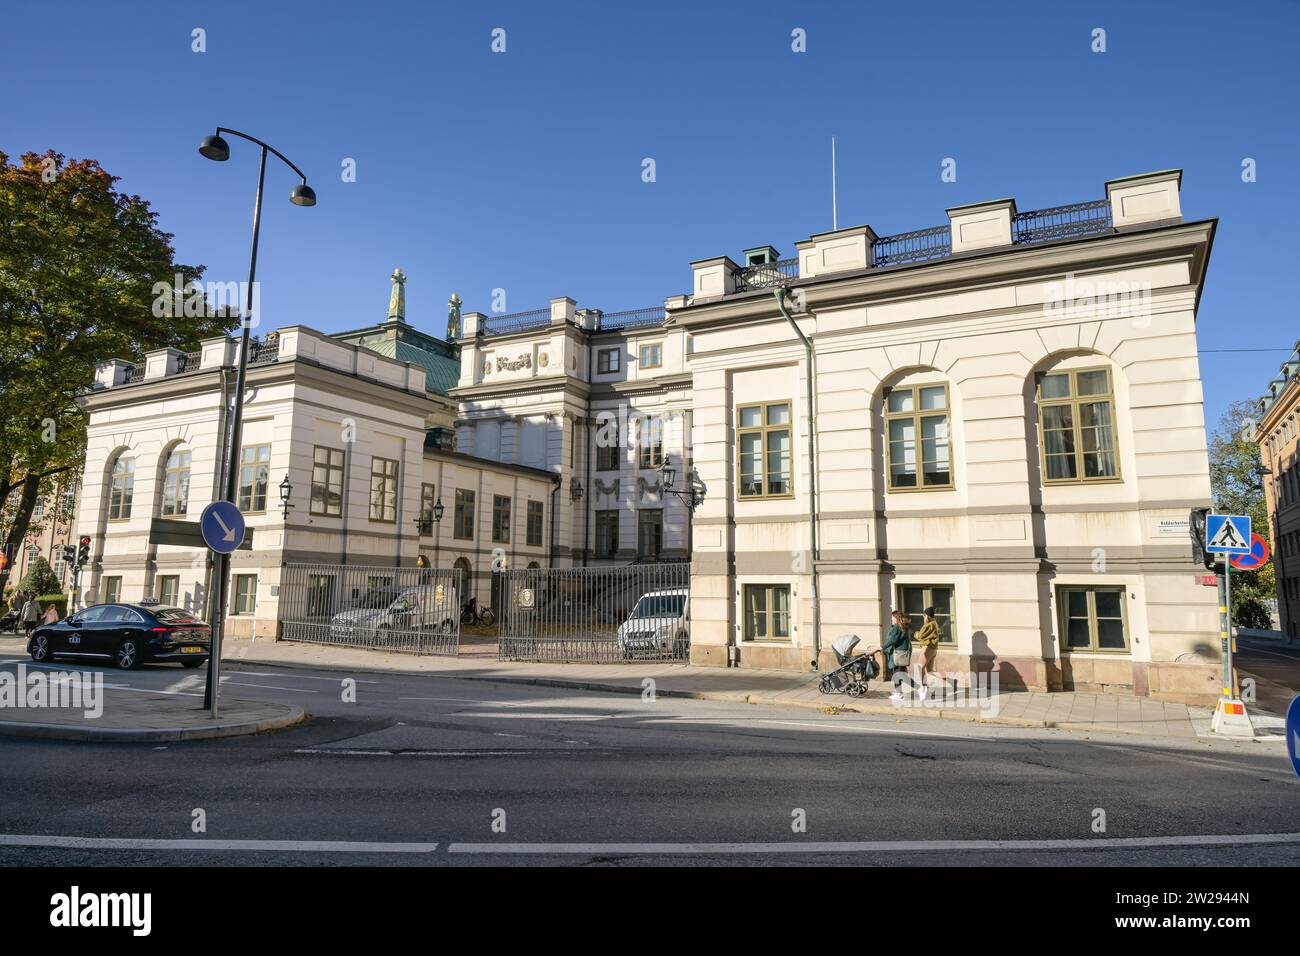 Högsta domstolen, höchstes Gericht in Zivil- und Strafsachen, Bondesches Palais, Riddarhustorget, Stockholm, Schweden Stock Photo